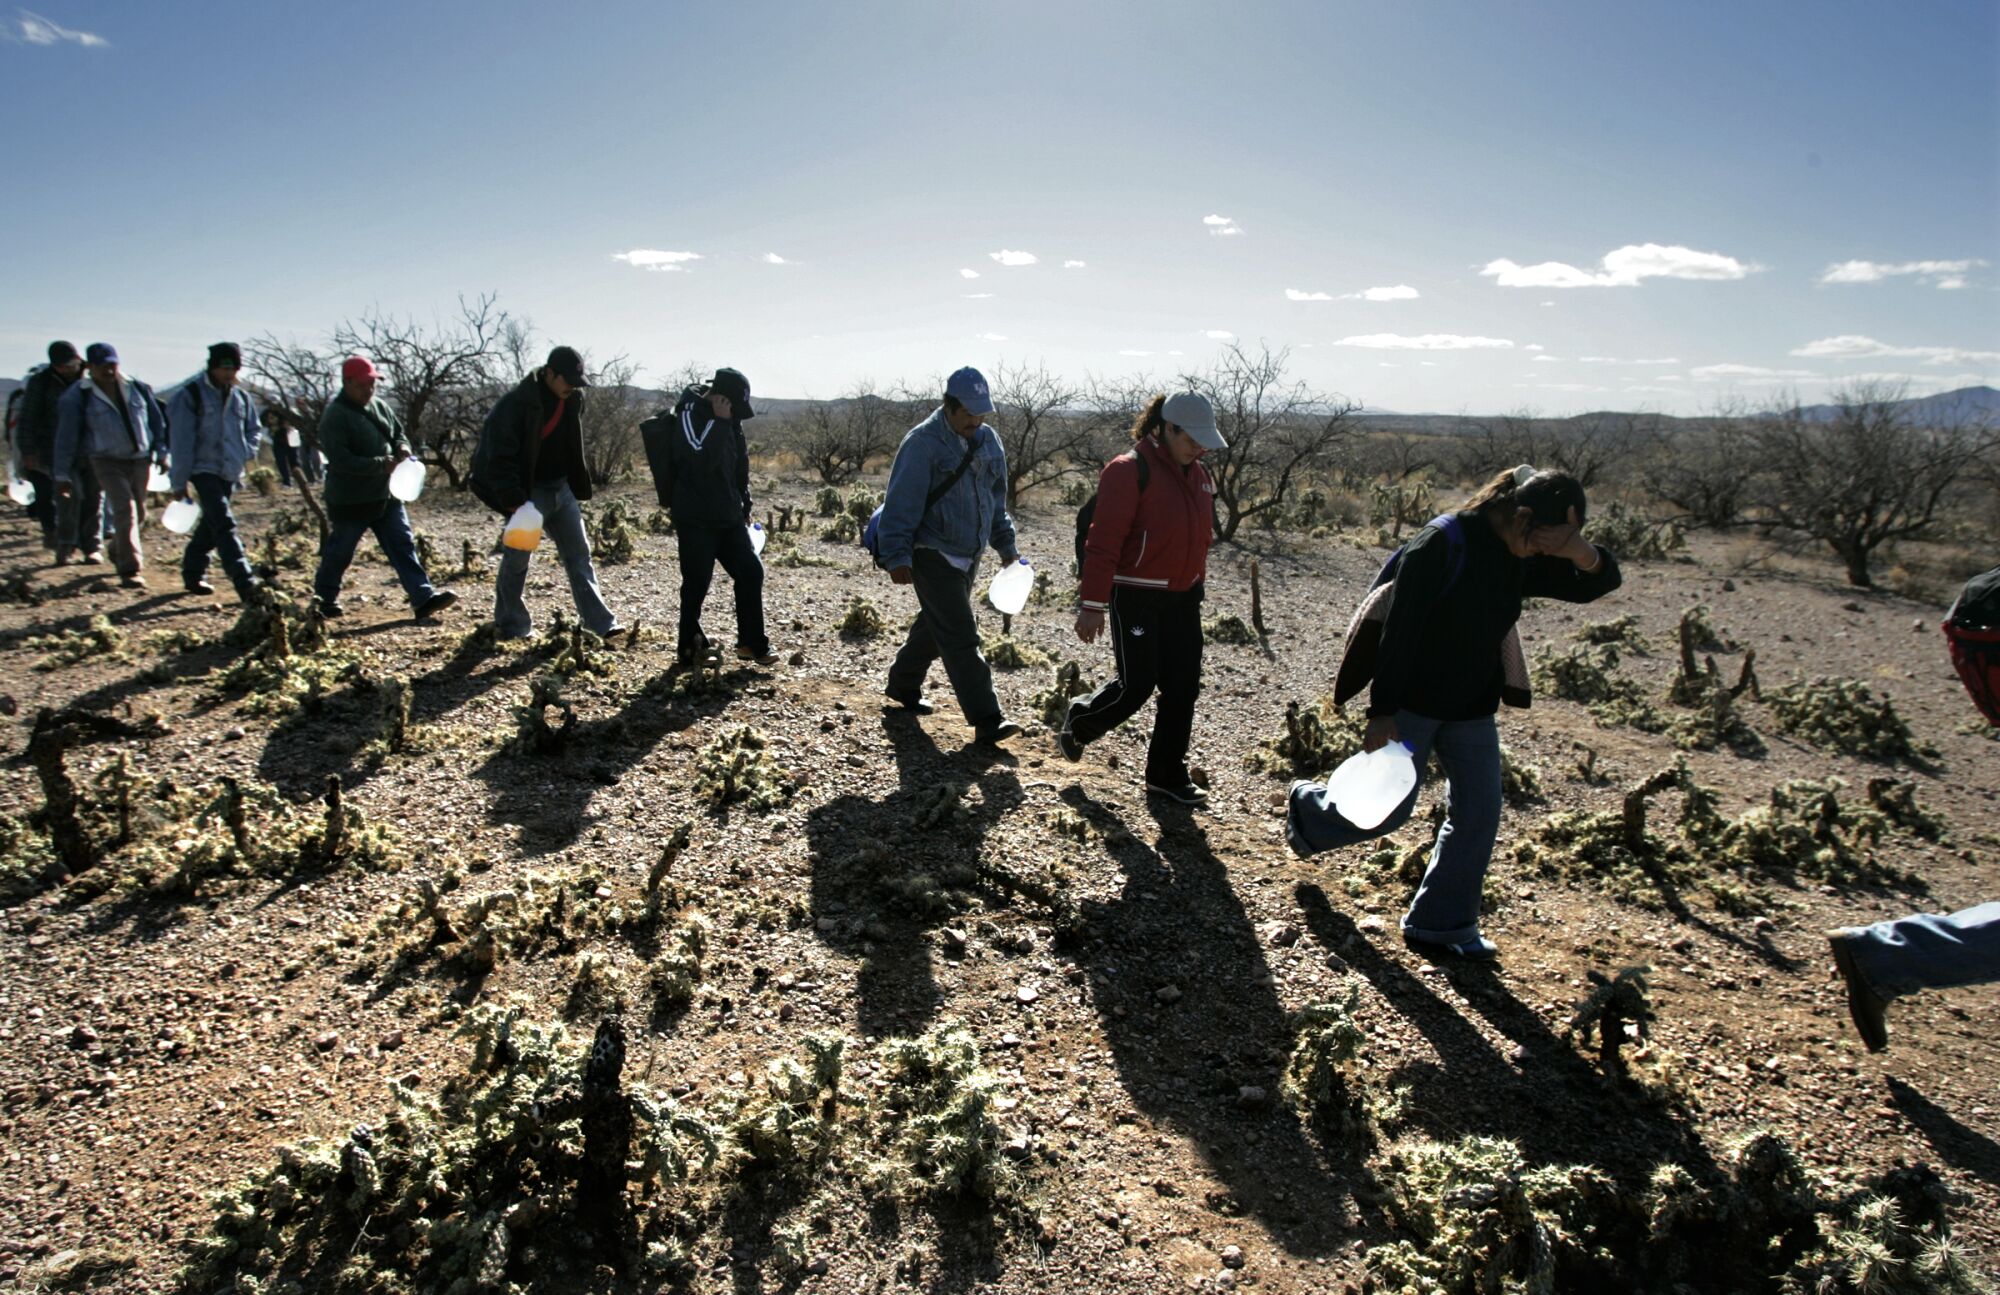 Cargando bidones de agua, los inmigrantes se abren paso por senderos al norte de la frontera 